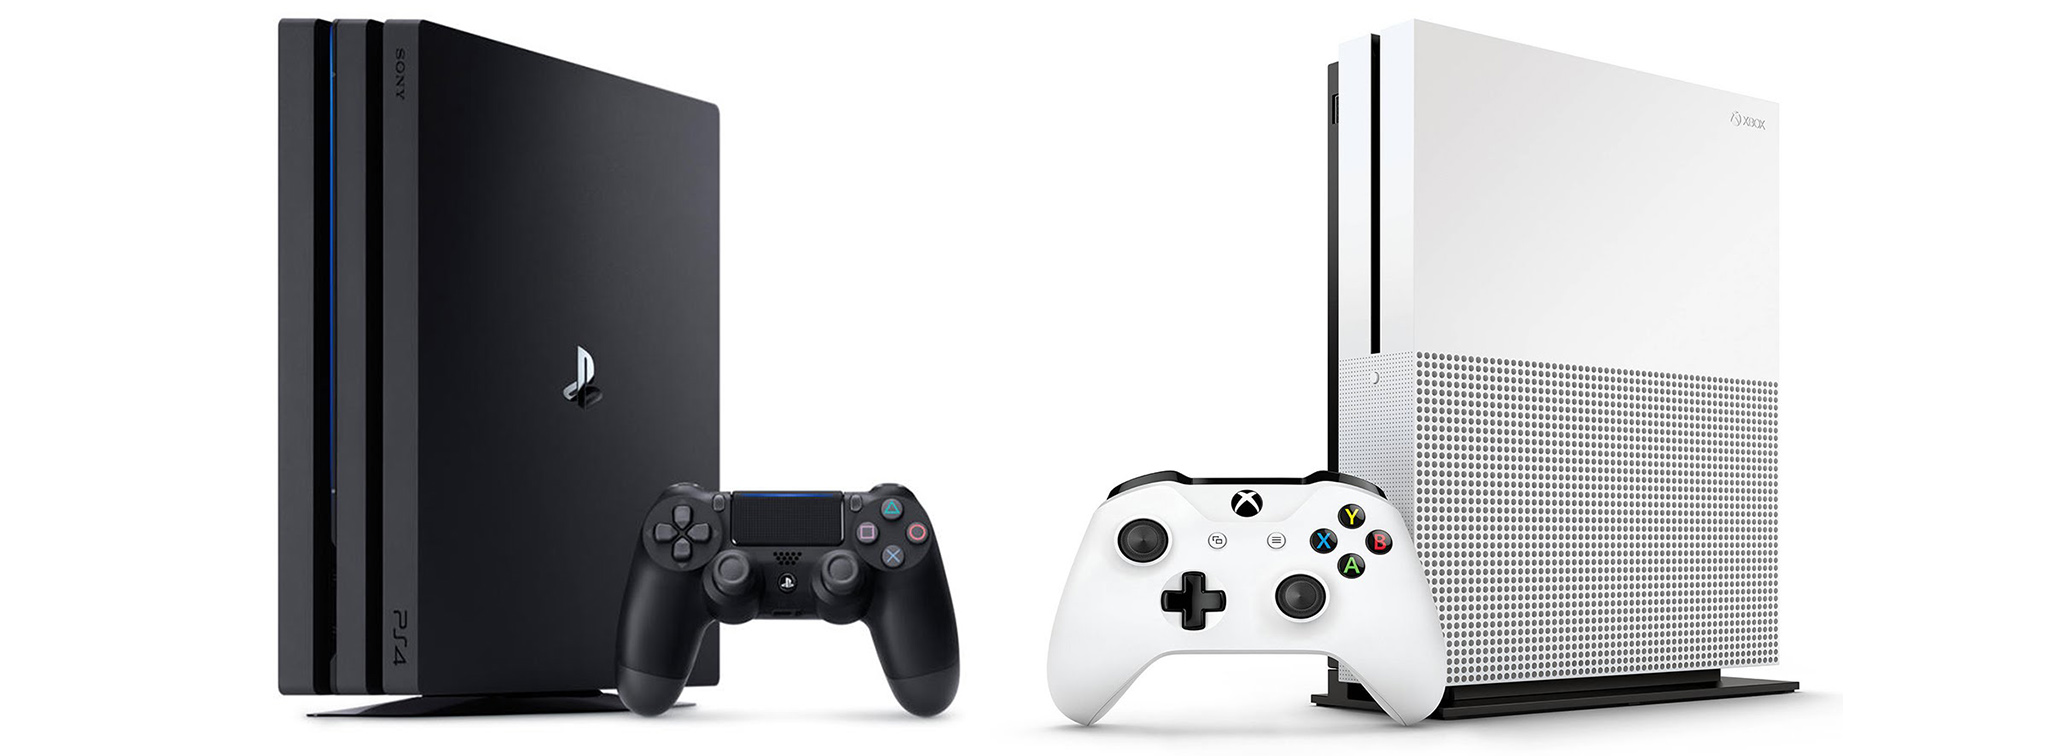 Liệu Xbox One X có phải là một sai lầm về chiến lược của Microsoft?